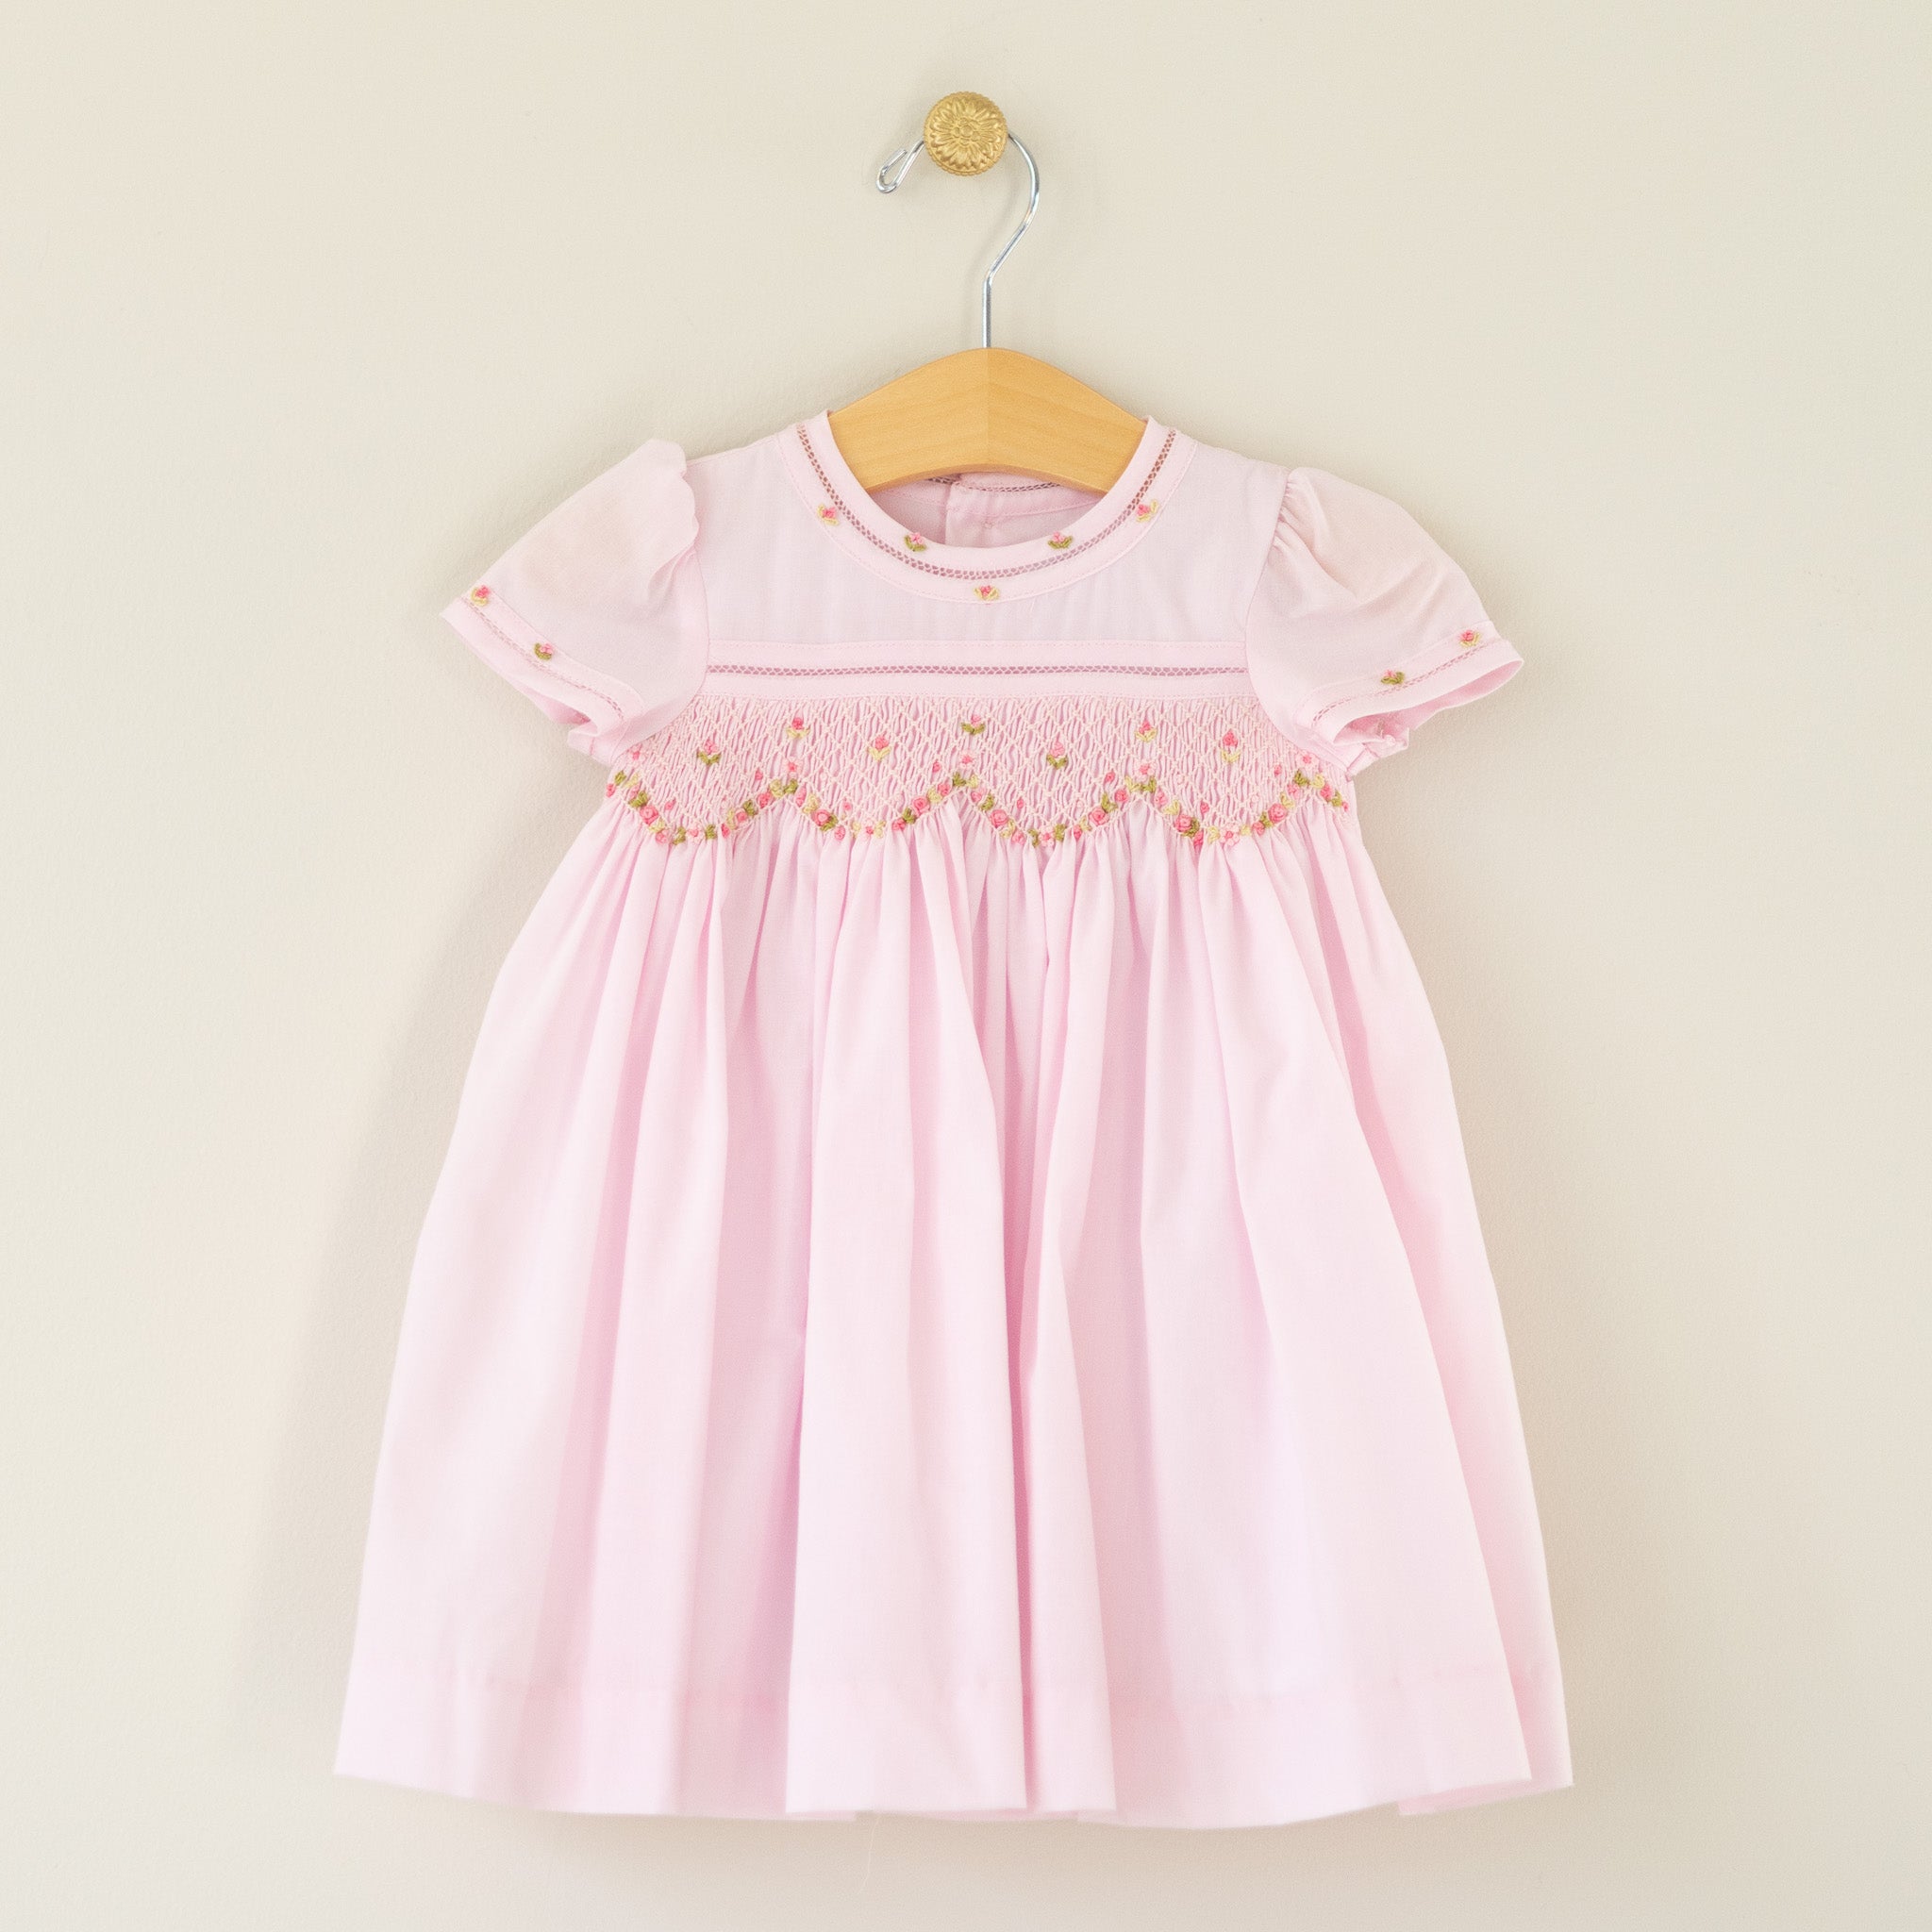 Infant Solid Pink Smocked Dress